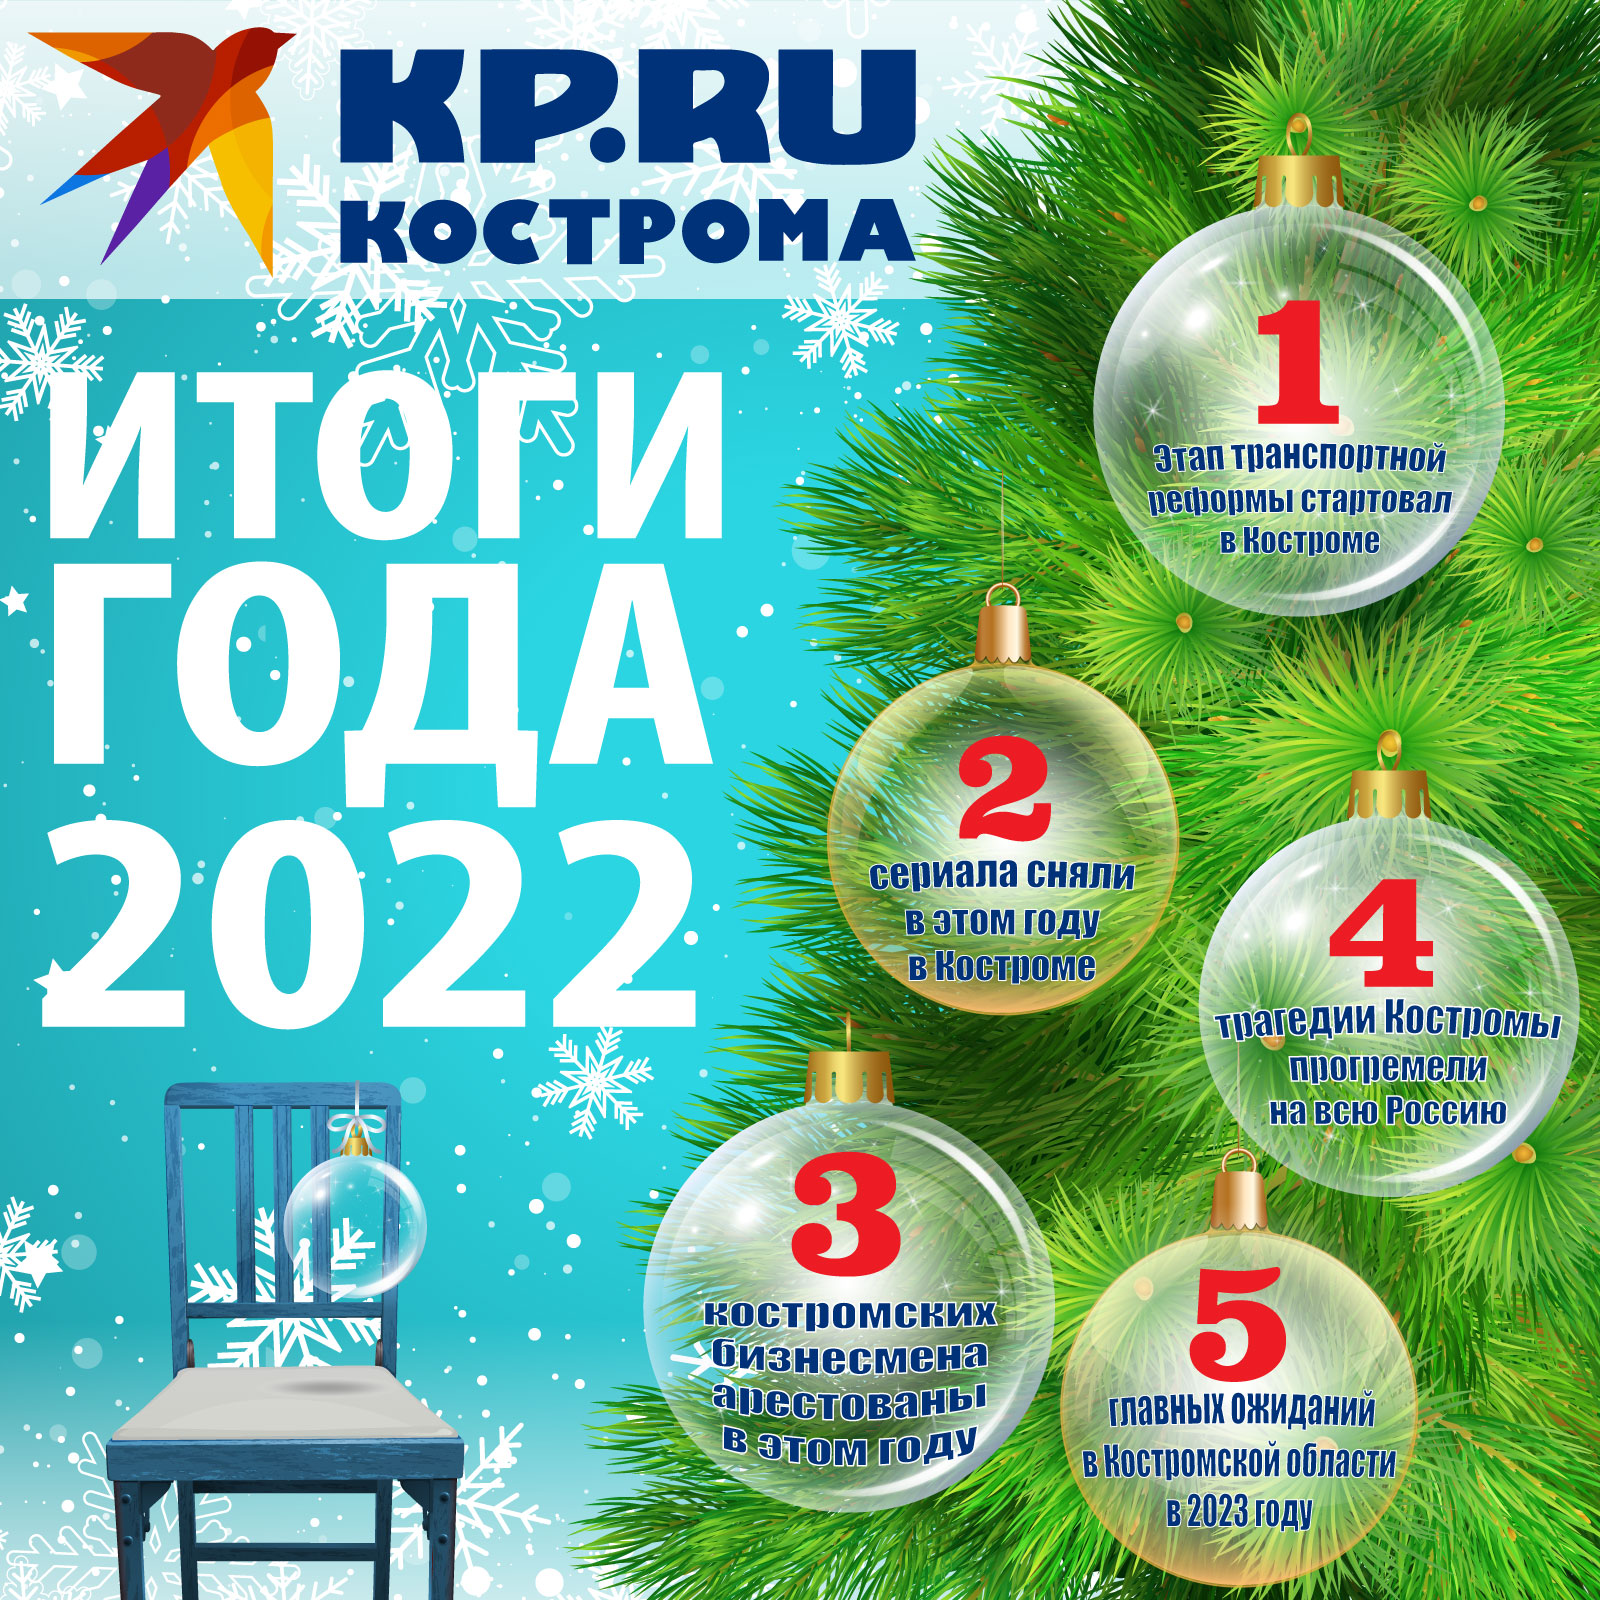 Выборы в костромской области в 2023 году